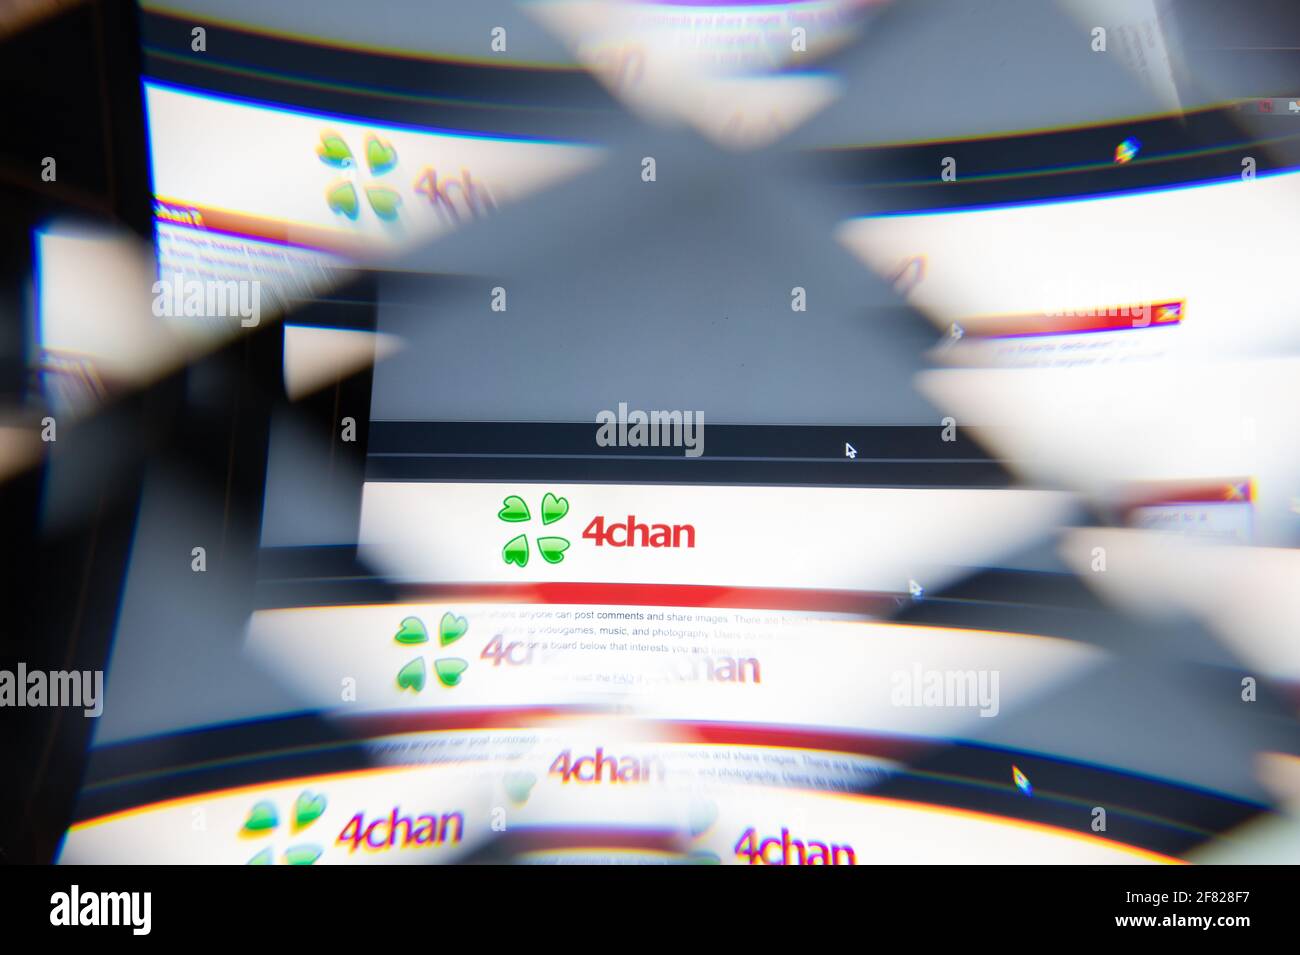 Milano, Italia - 10 APRILE 2021: Logo 4CHAN sullo schermo del laptop visto attraverso un prisma ottico, interpretazione creativa. Immagine dinamica e unica da 4CHAN Foto Stock